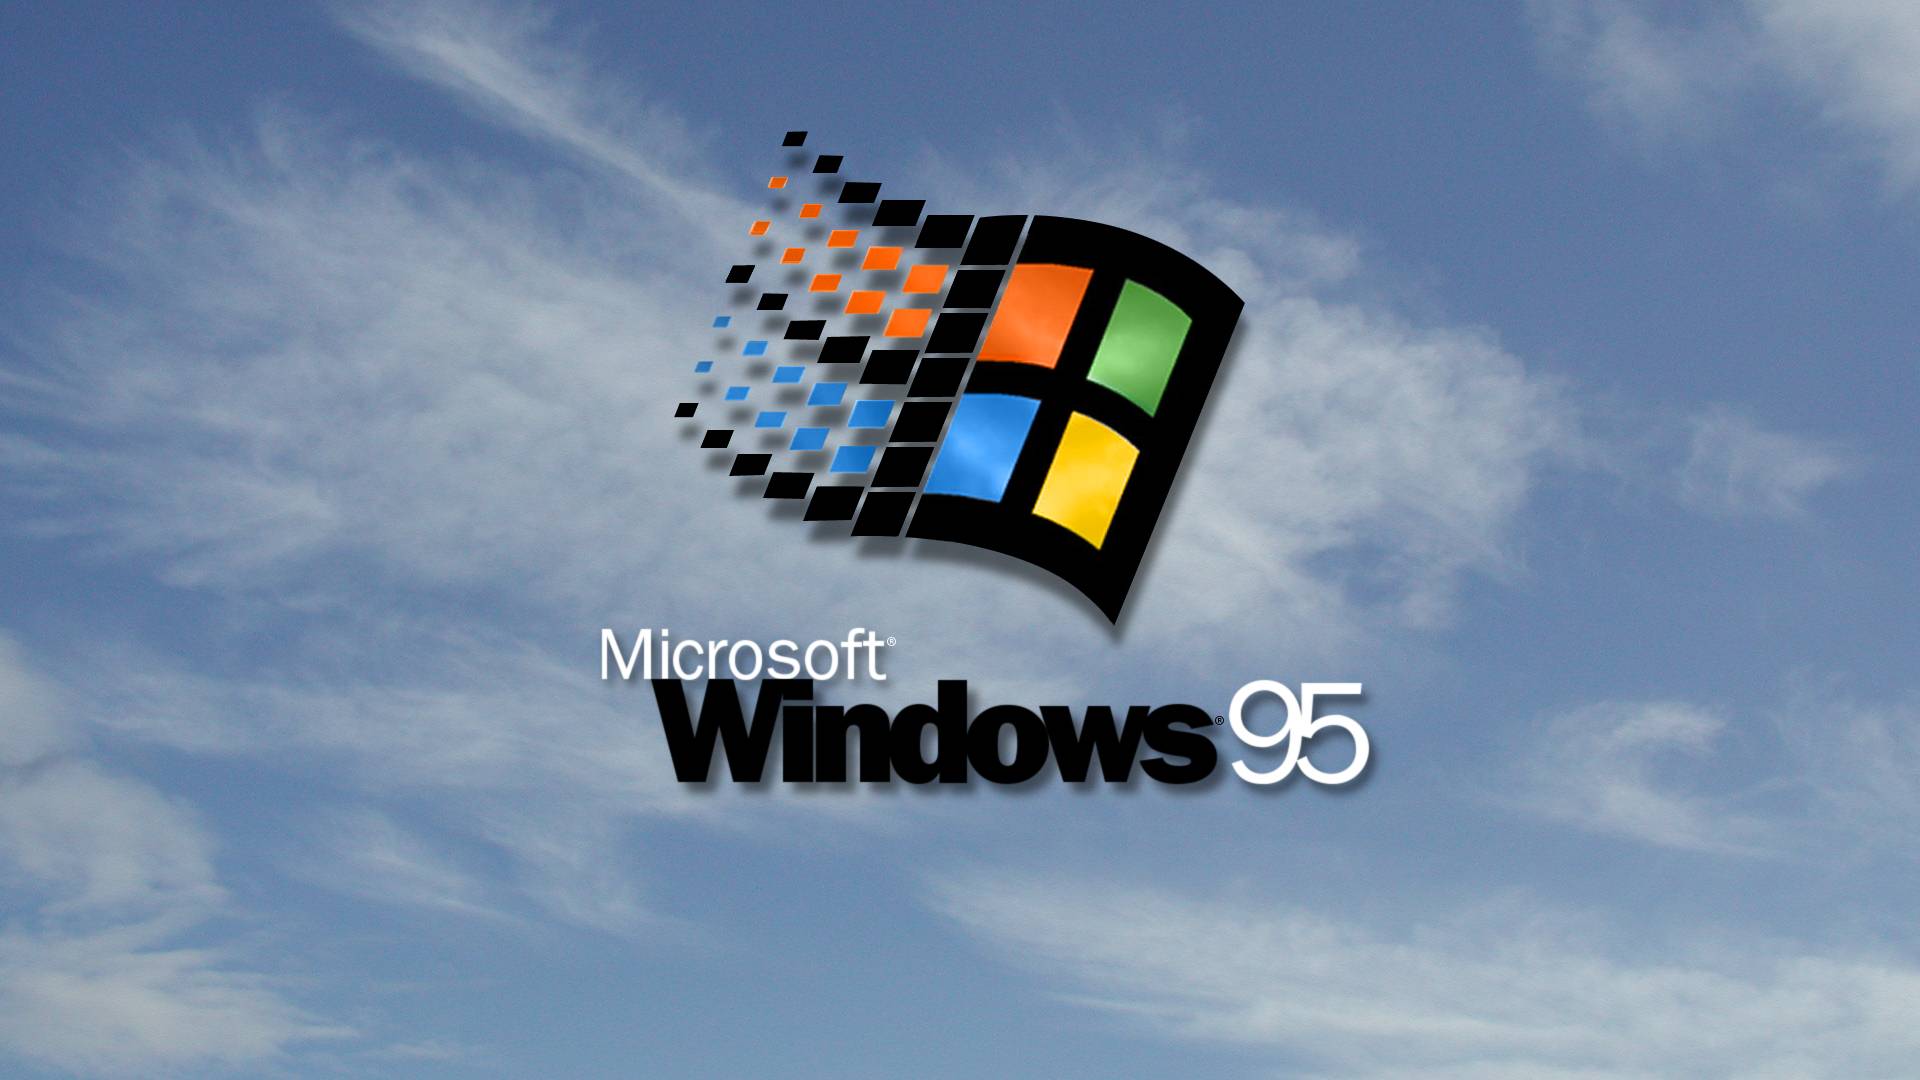 Bạn đang tìm kiếm hình nền cho desktop của mình với phong cách cổ điển? Hãy xem ngay bức hình nền Desktop Windows 95 trên Wallpaper Cave. Với tông màu xanh ngọt ngào và huyền thoại của phiên bản Windows 95, bạn sẽ cảm thấy như được trở về thời học sinh thơ ấu trong sự thân thuộc.